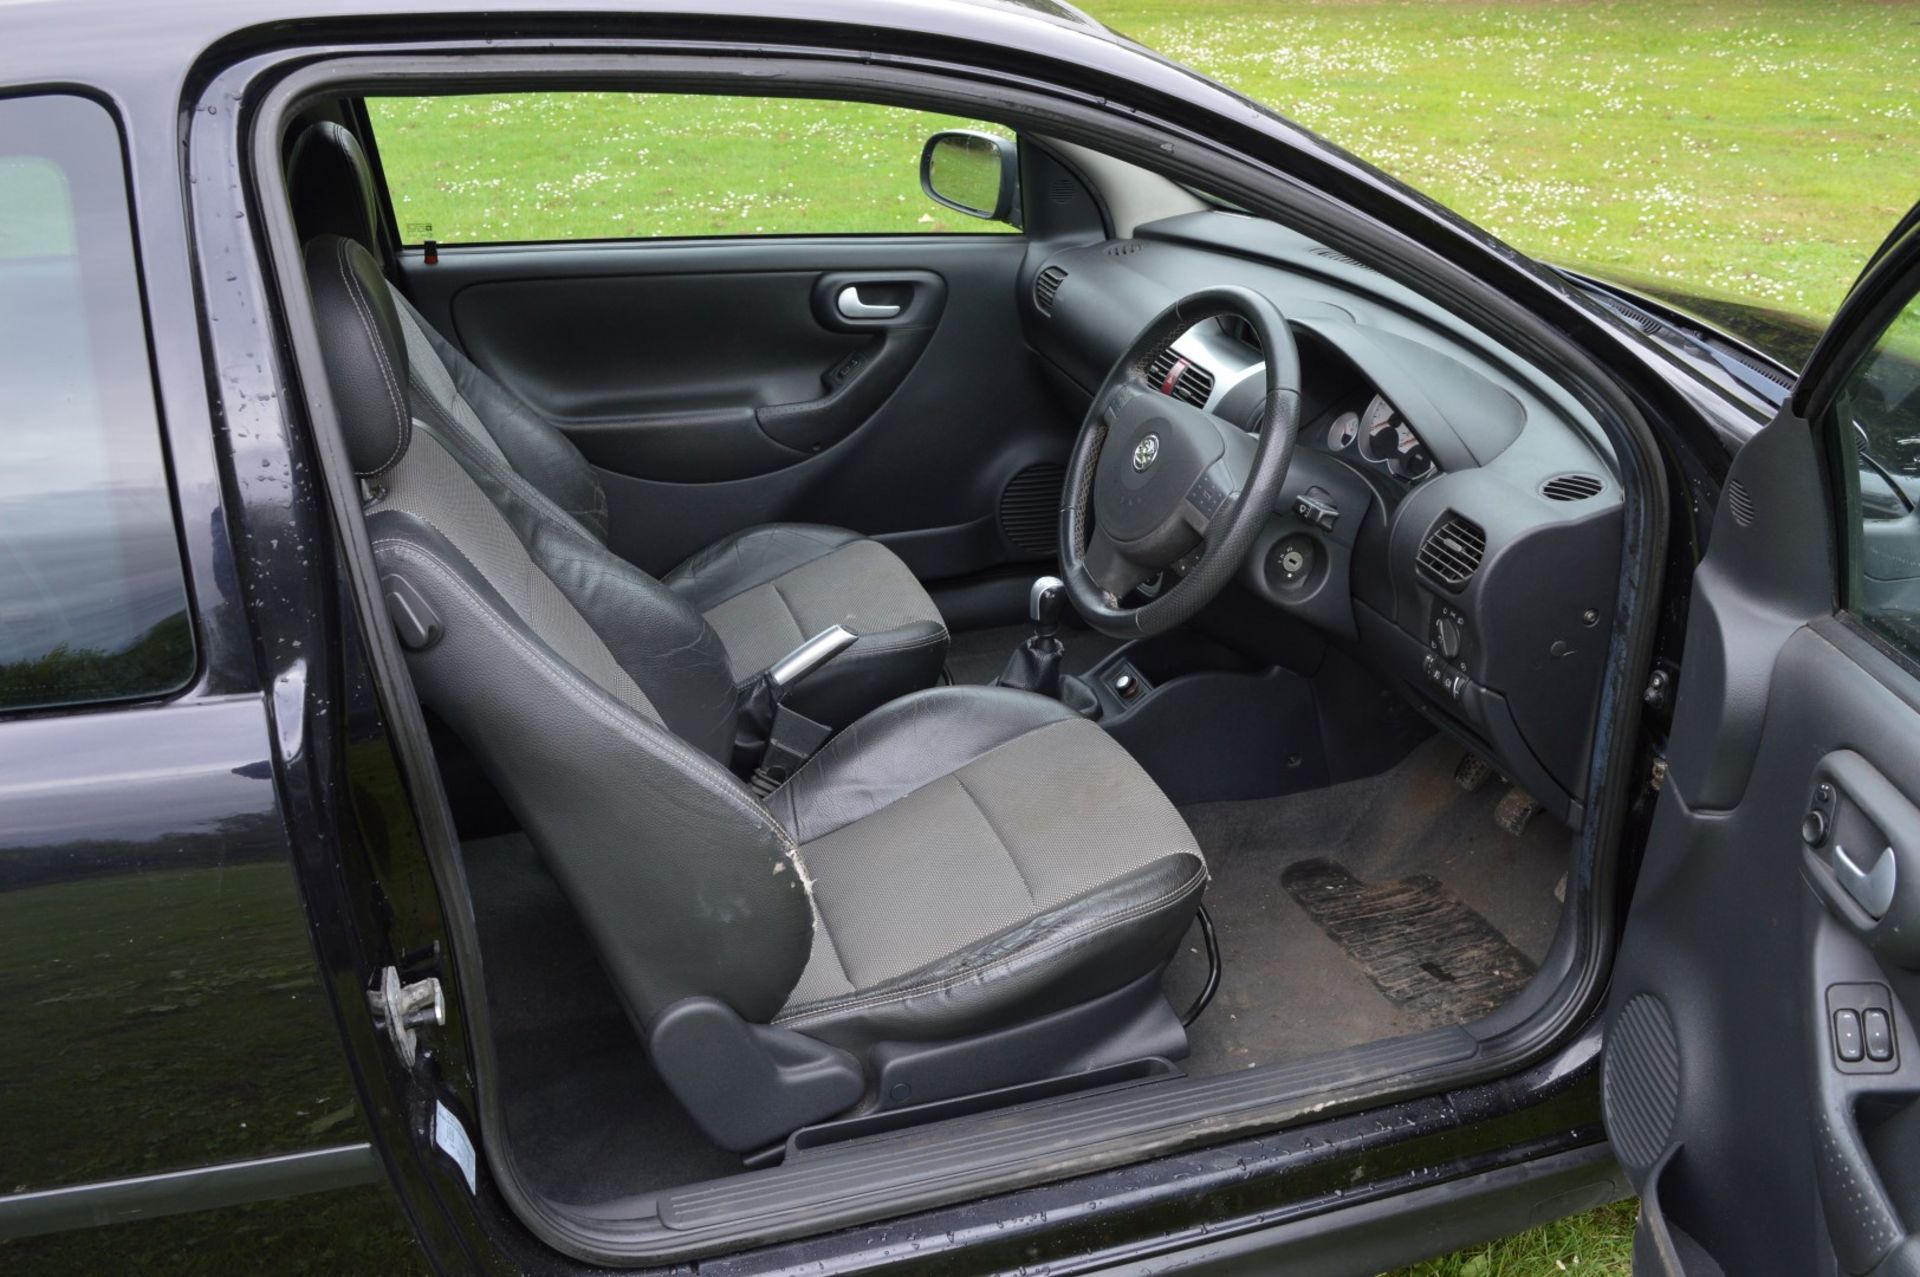 1 x Vauxhall Corsa SXI+ 3 Door Hatchback 1.2 - 2006 56 Plate - 78,000 Miles - MOT June 2018 - Image 20 of 36